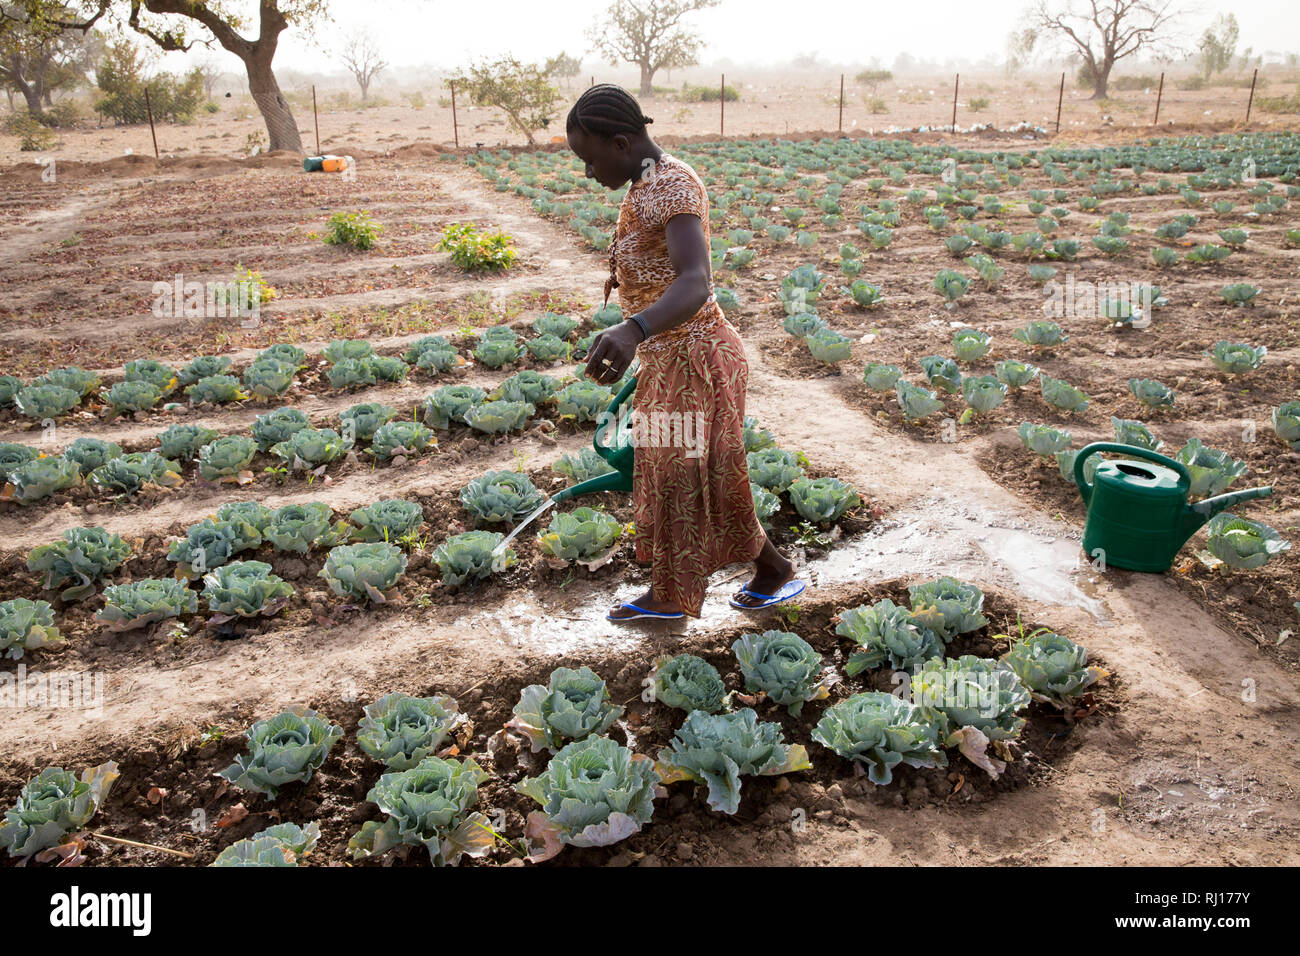 La-toden Dorf, yako Provinz, Burkina Faso. Eine Frau die Bewässerung ihrer Kohl in ihrem Markt Garten. Es besteht jedoch ein Mangel an, da die Brunnen in den Garten gegraben am Ende der letzten Regenzeit und die meisten sind jetzt trocken. Stockfoto